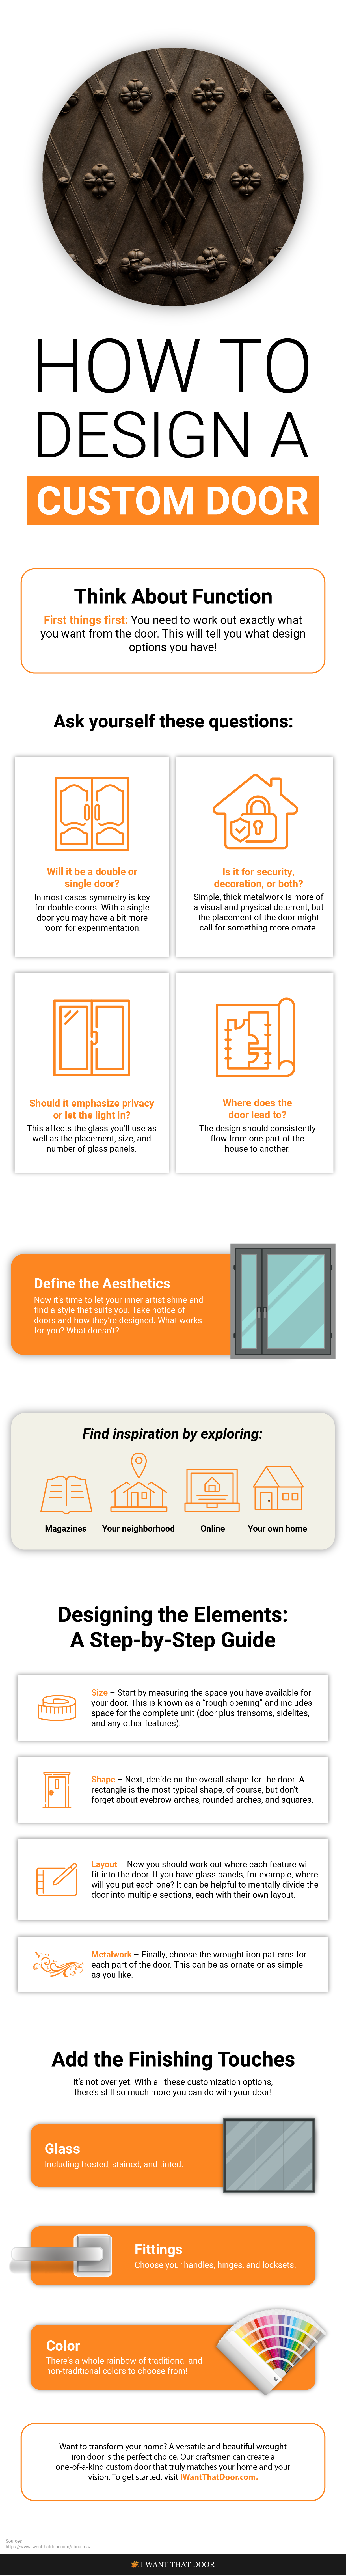 How to Design a Custom Door Infographic